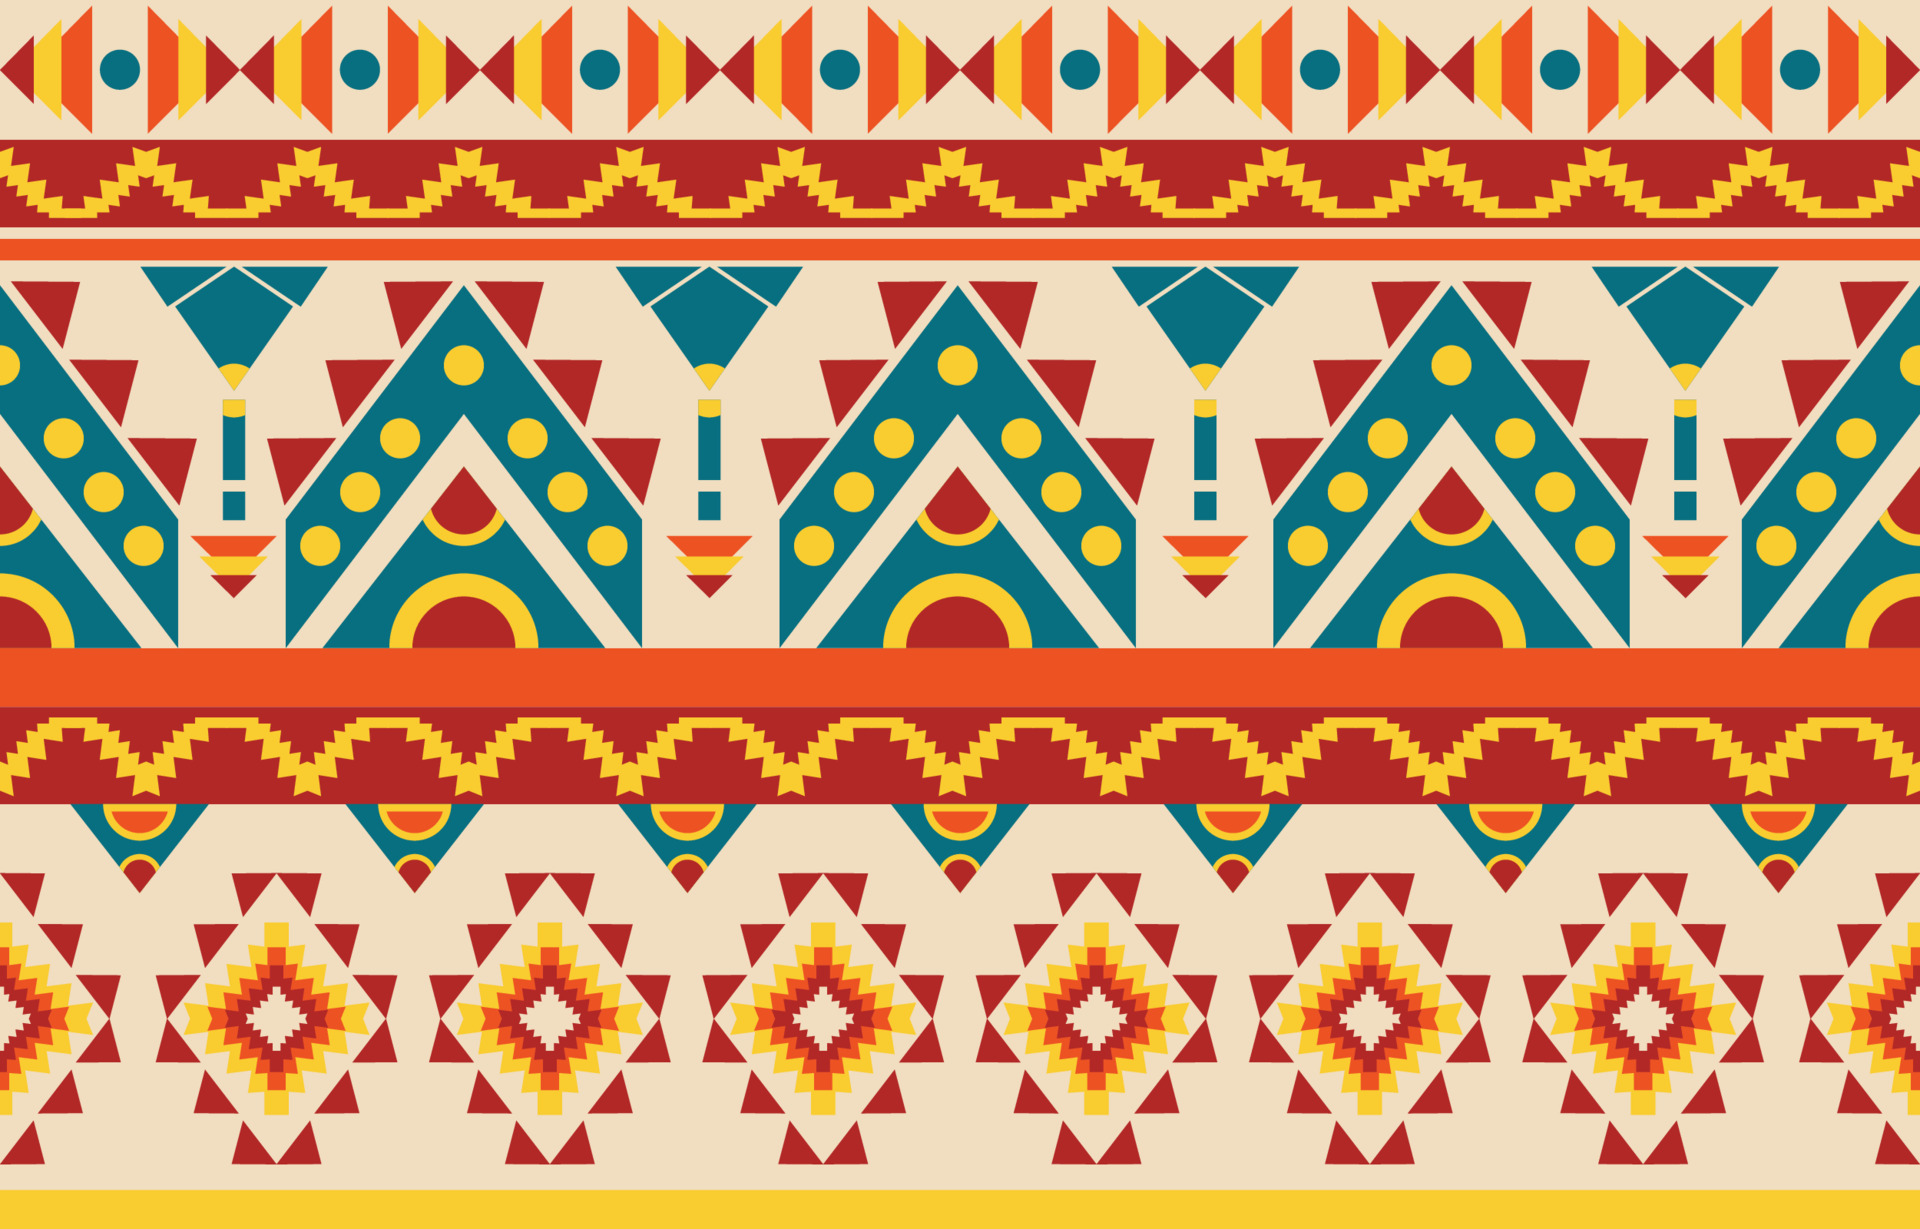 Bao trùm hình ảnh của một hoa văn da quy tuyệt đẹp của dân tộc Navajo. Mẫu hoa văn này đã được cẩn thận thiết kế để tạo ra sự tương phản và sắc nét. Hãy chìm đắm trong vẻ đẹp của nó và trải nghiệm sự tinh tế của dân tộc Navajo.